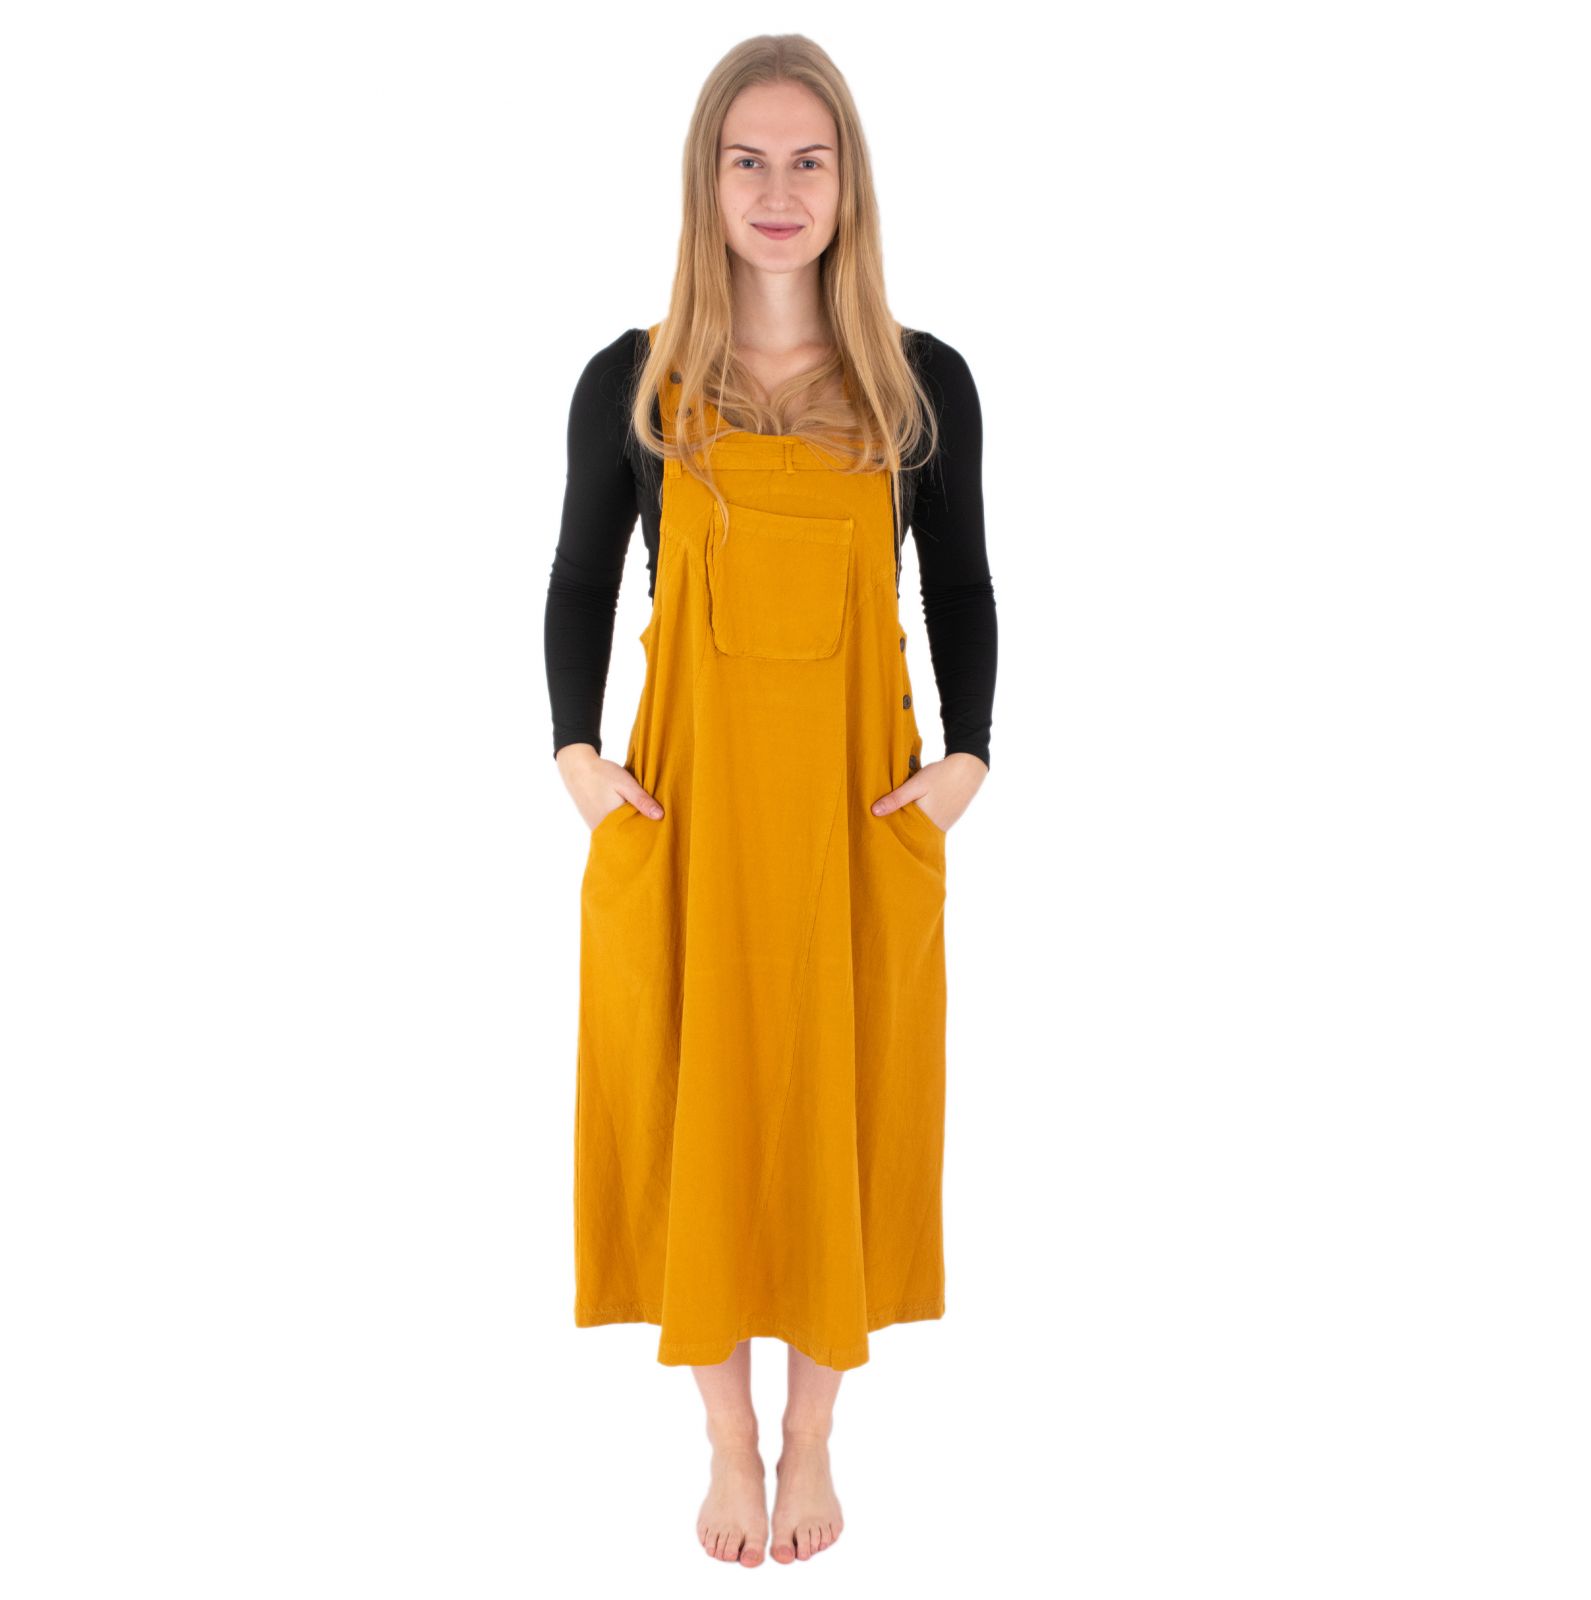 Hořčicově žluté bavlněné šaty s laclem Jayleen Mustard yellow Nepal